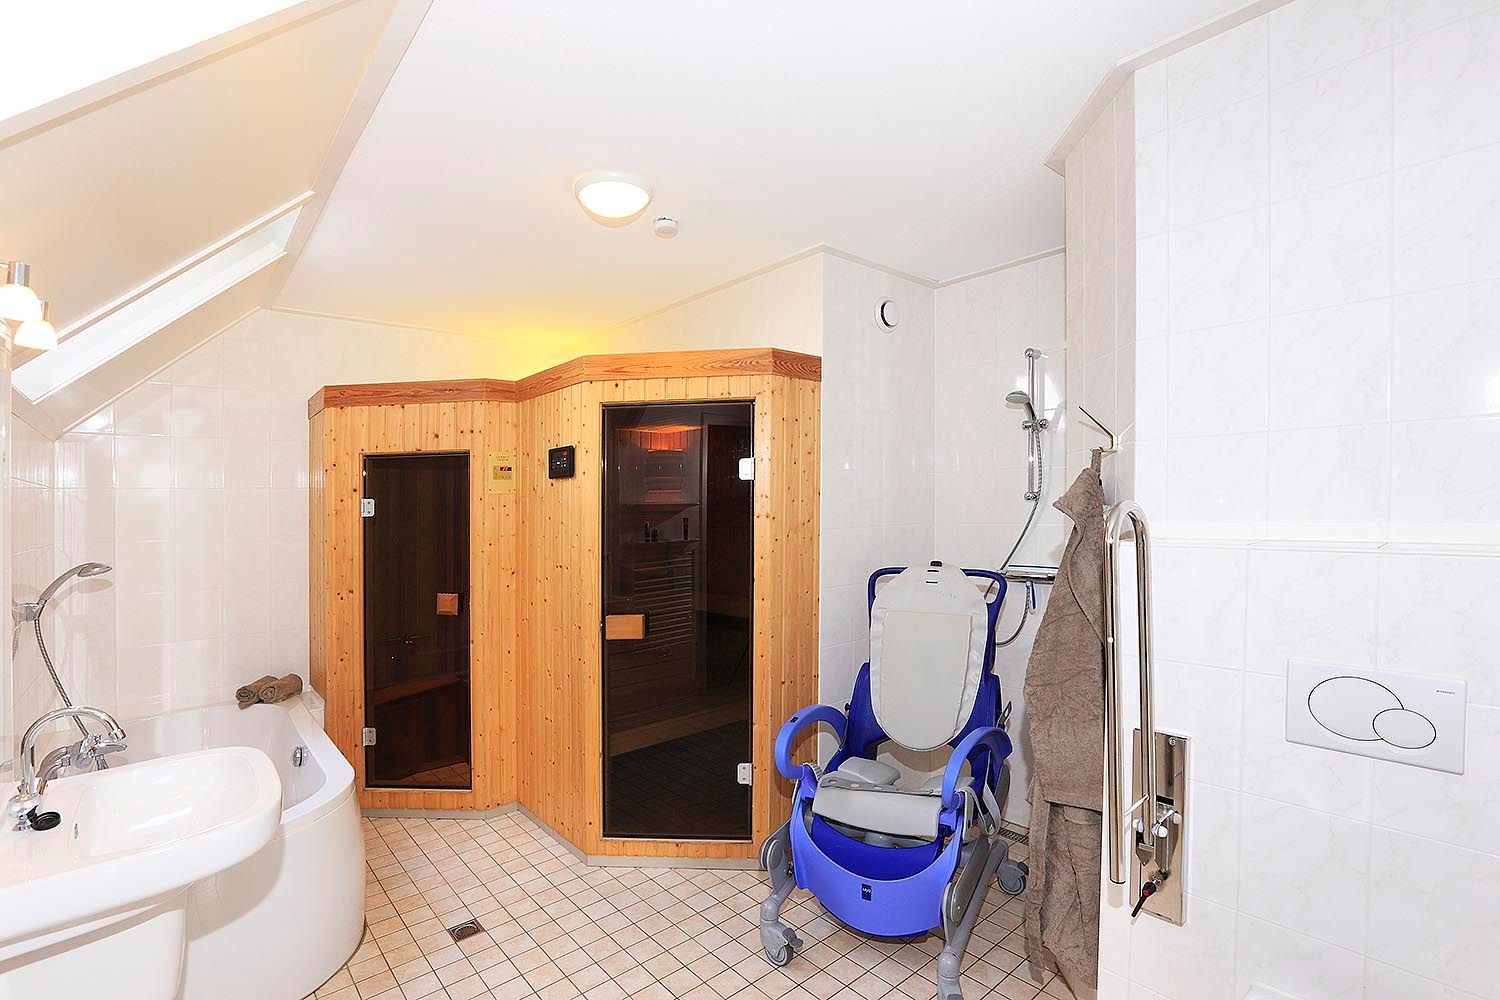 Badkamer met douchestoel en sauna